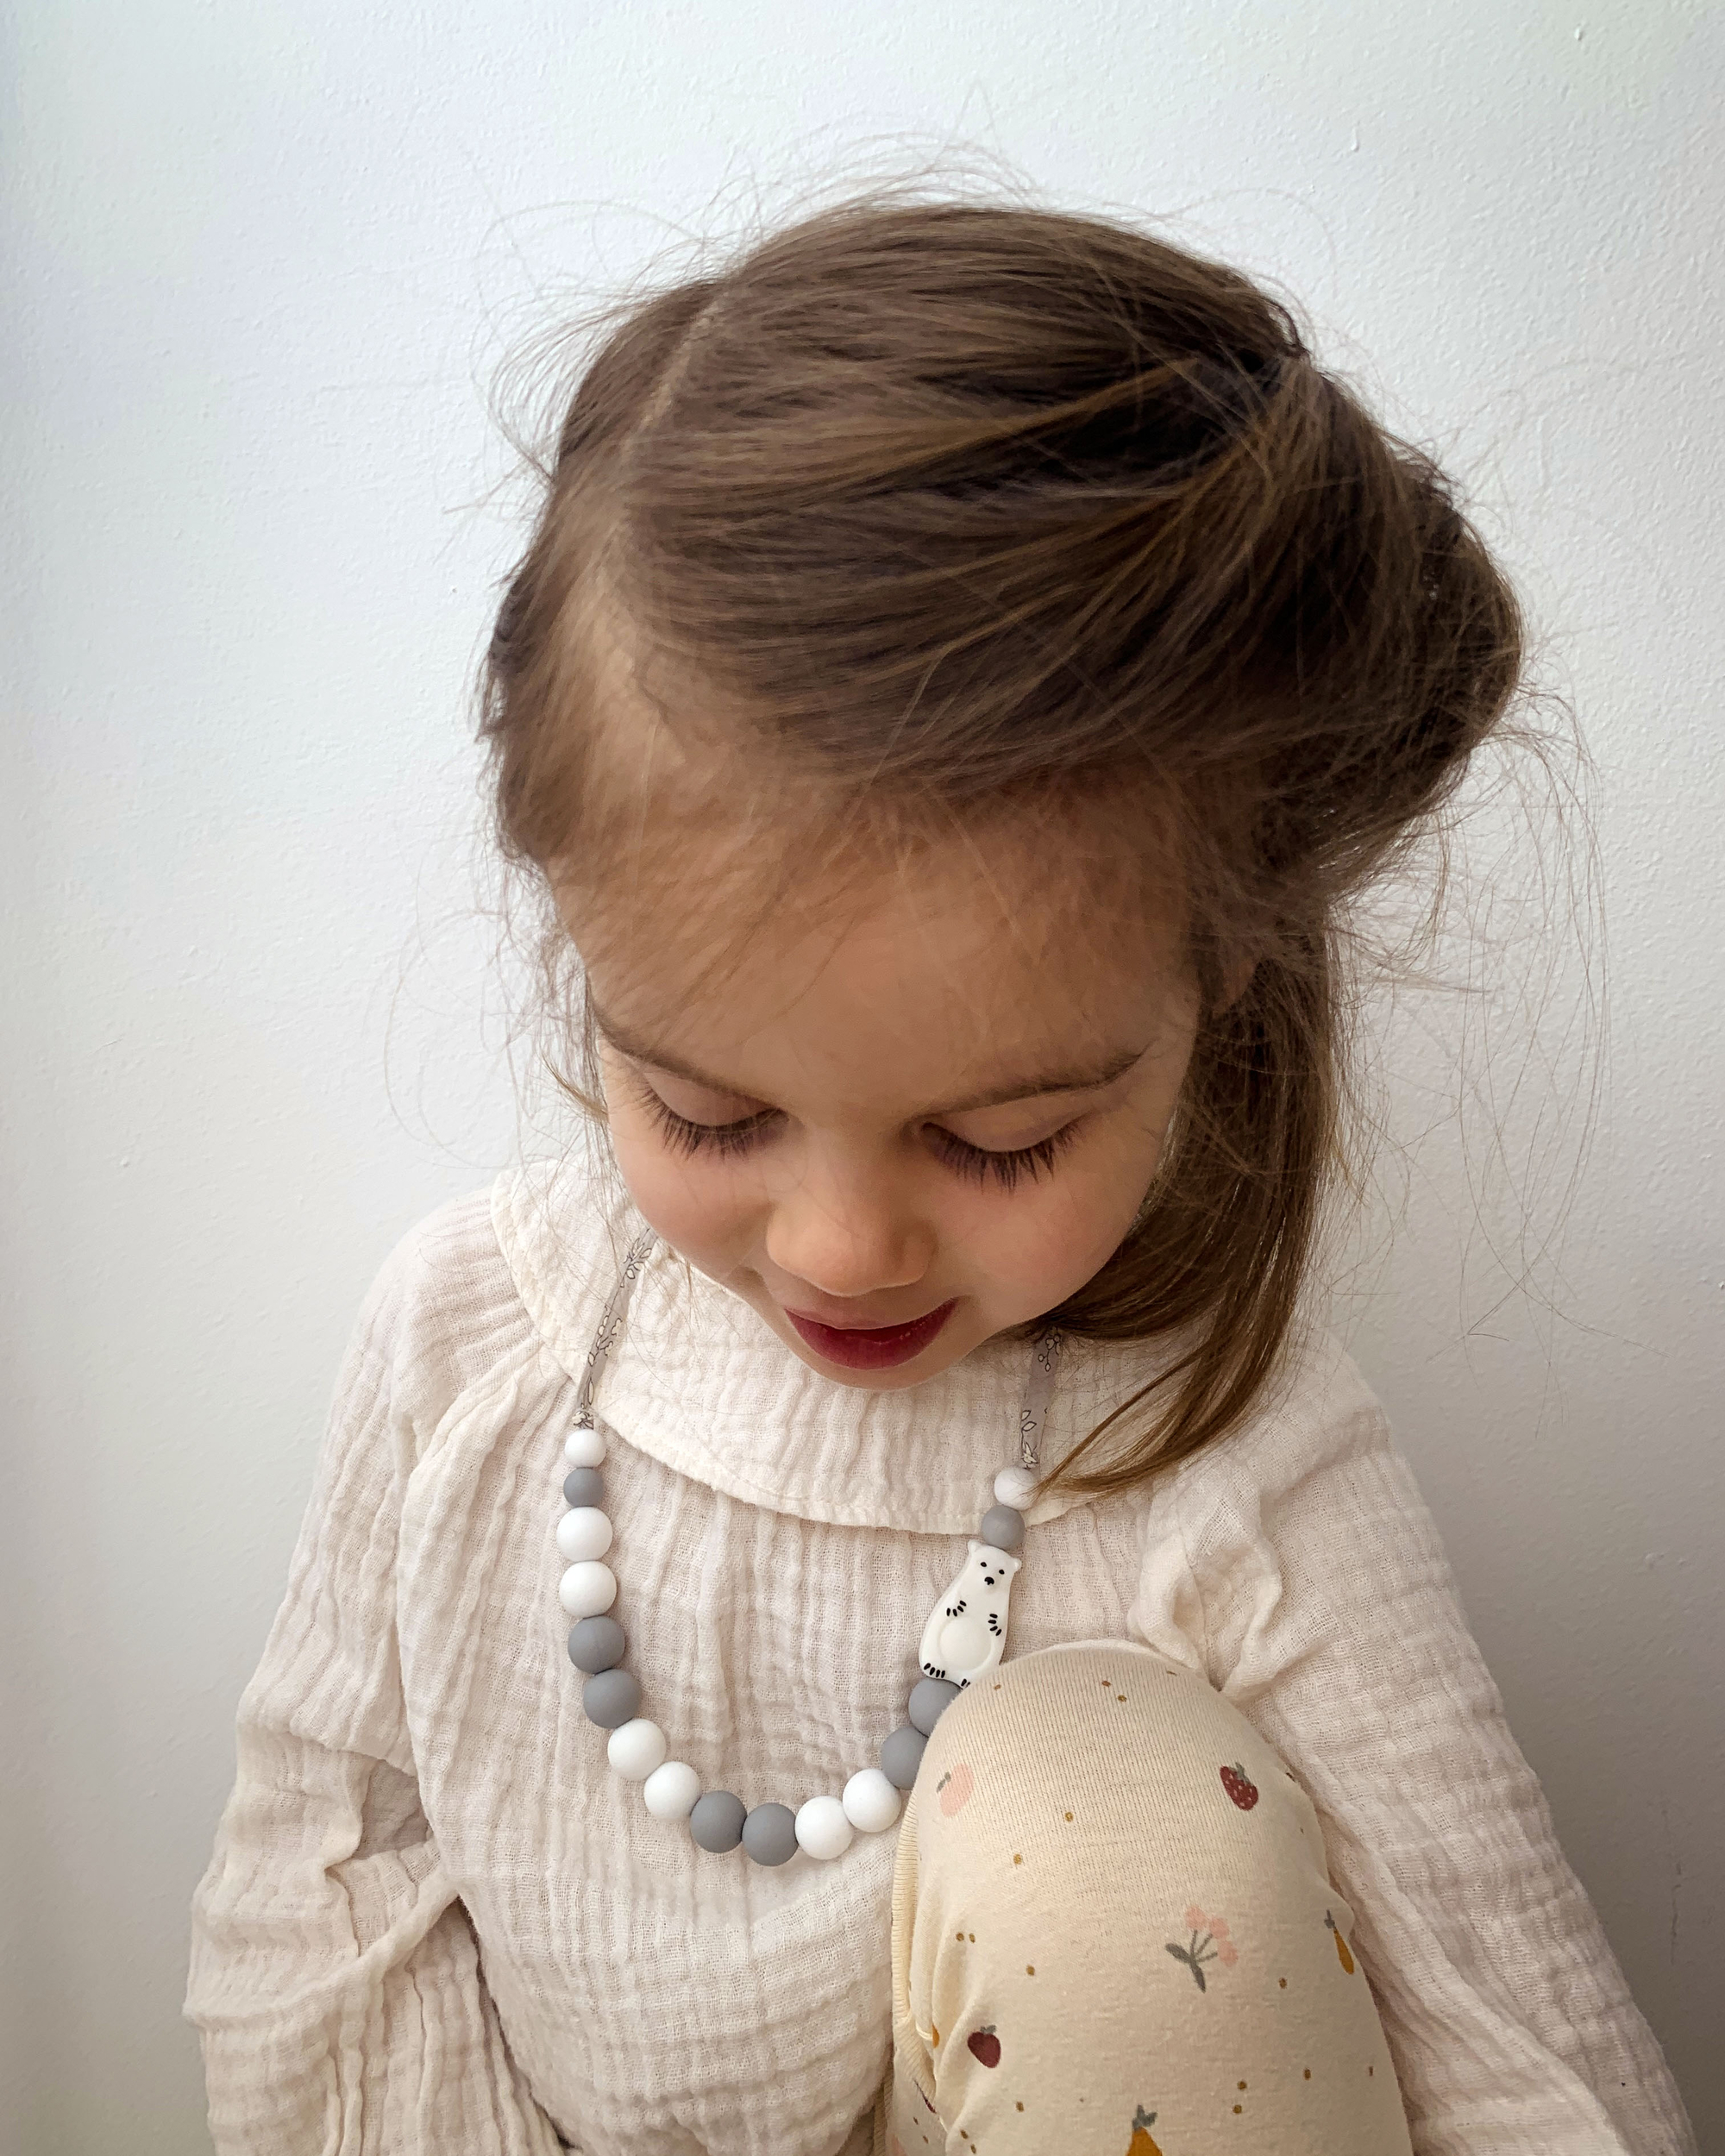 Kit créatif enfant Je fabrique mon collier - Marguerite - dès 4 ans -  Pour enfant/Kits créatif - Mawen Materne